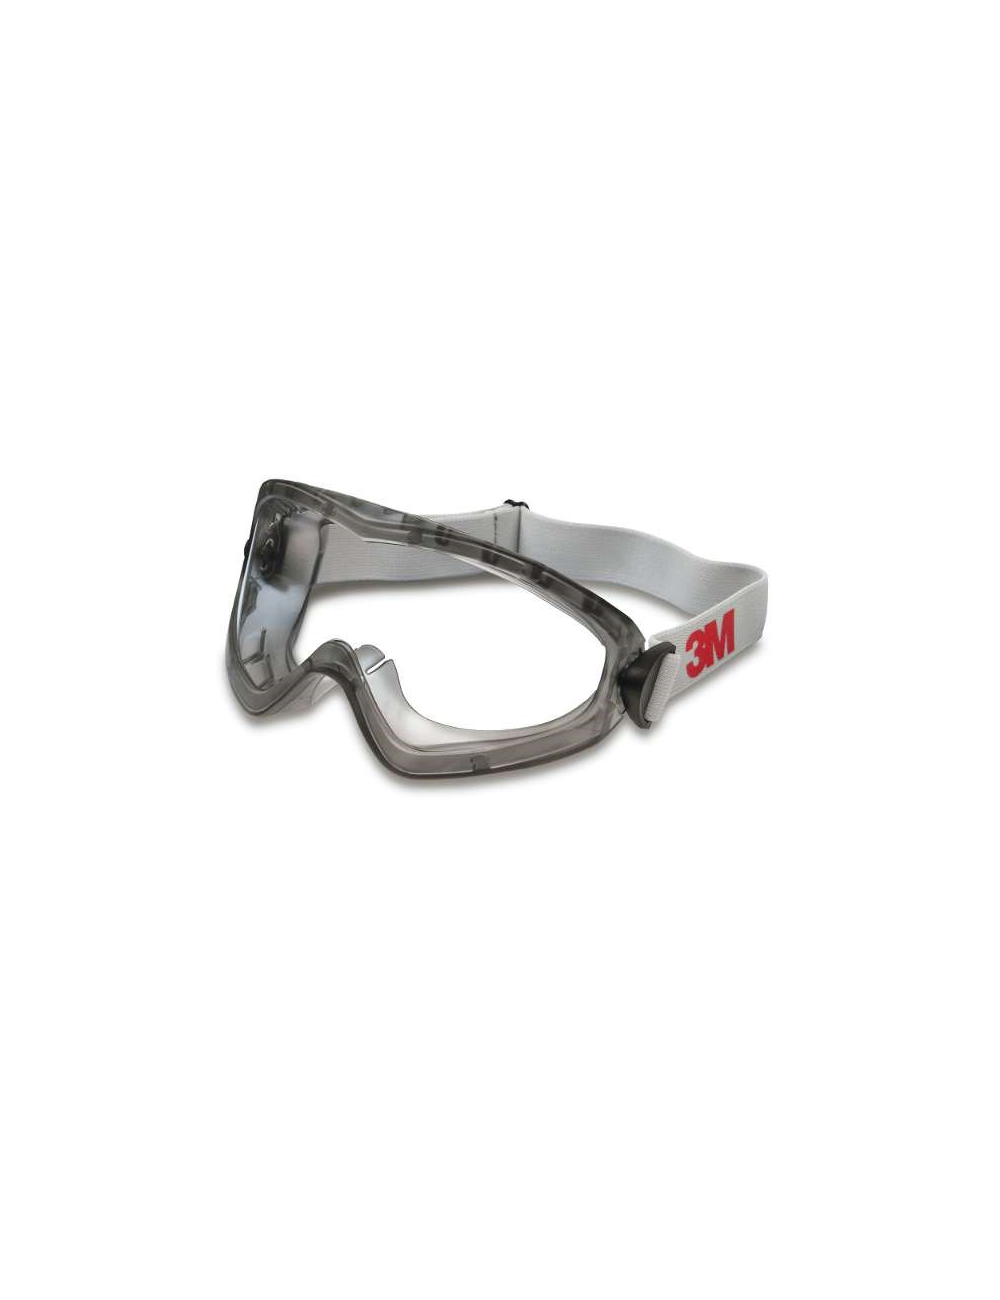 Sur-lunettes de protection - Tablia SARL - Vêtements de travail